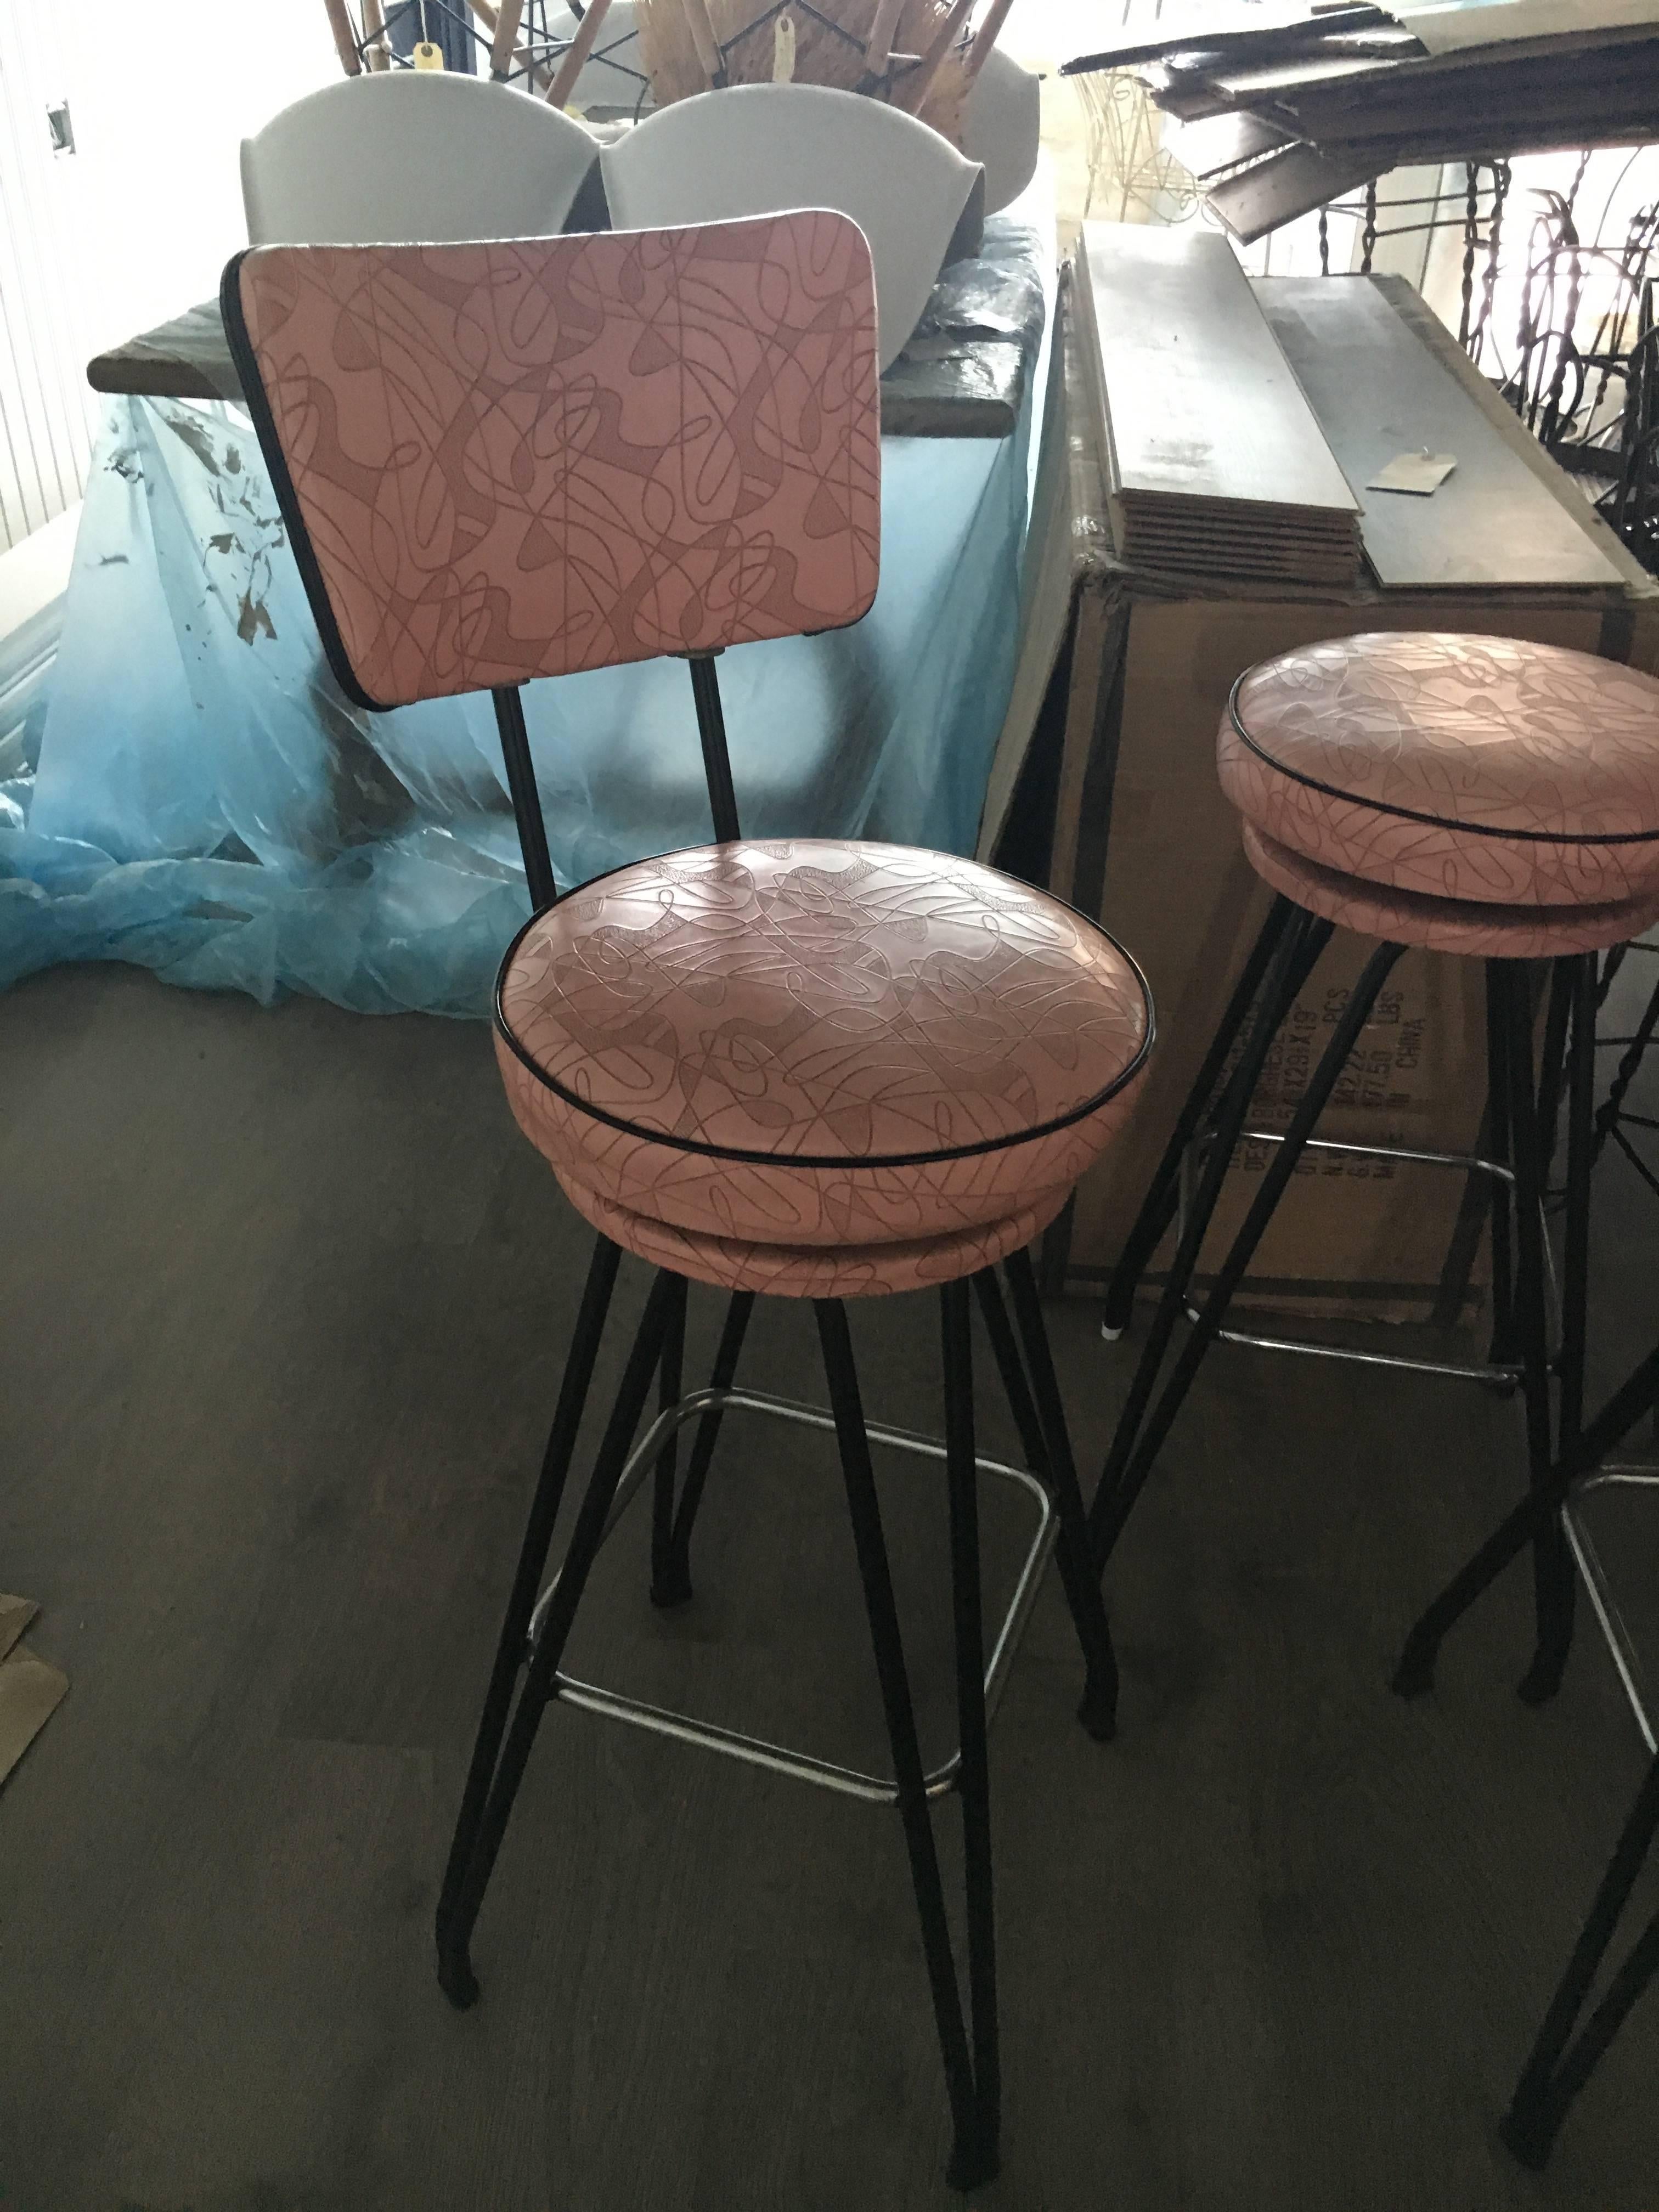 vintage mid century bar stools